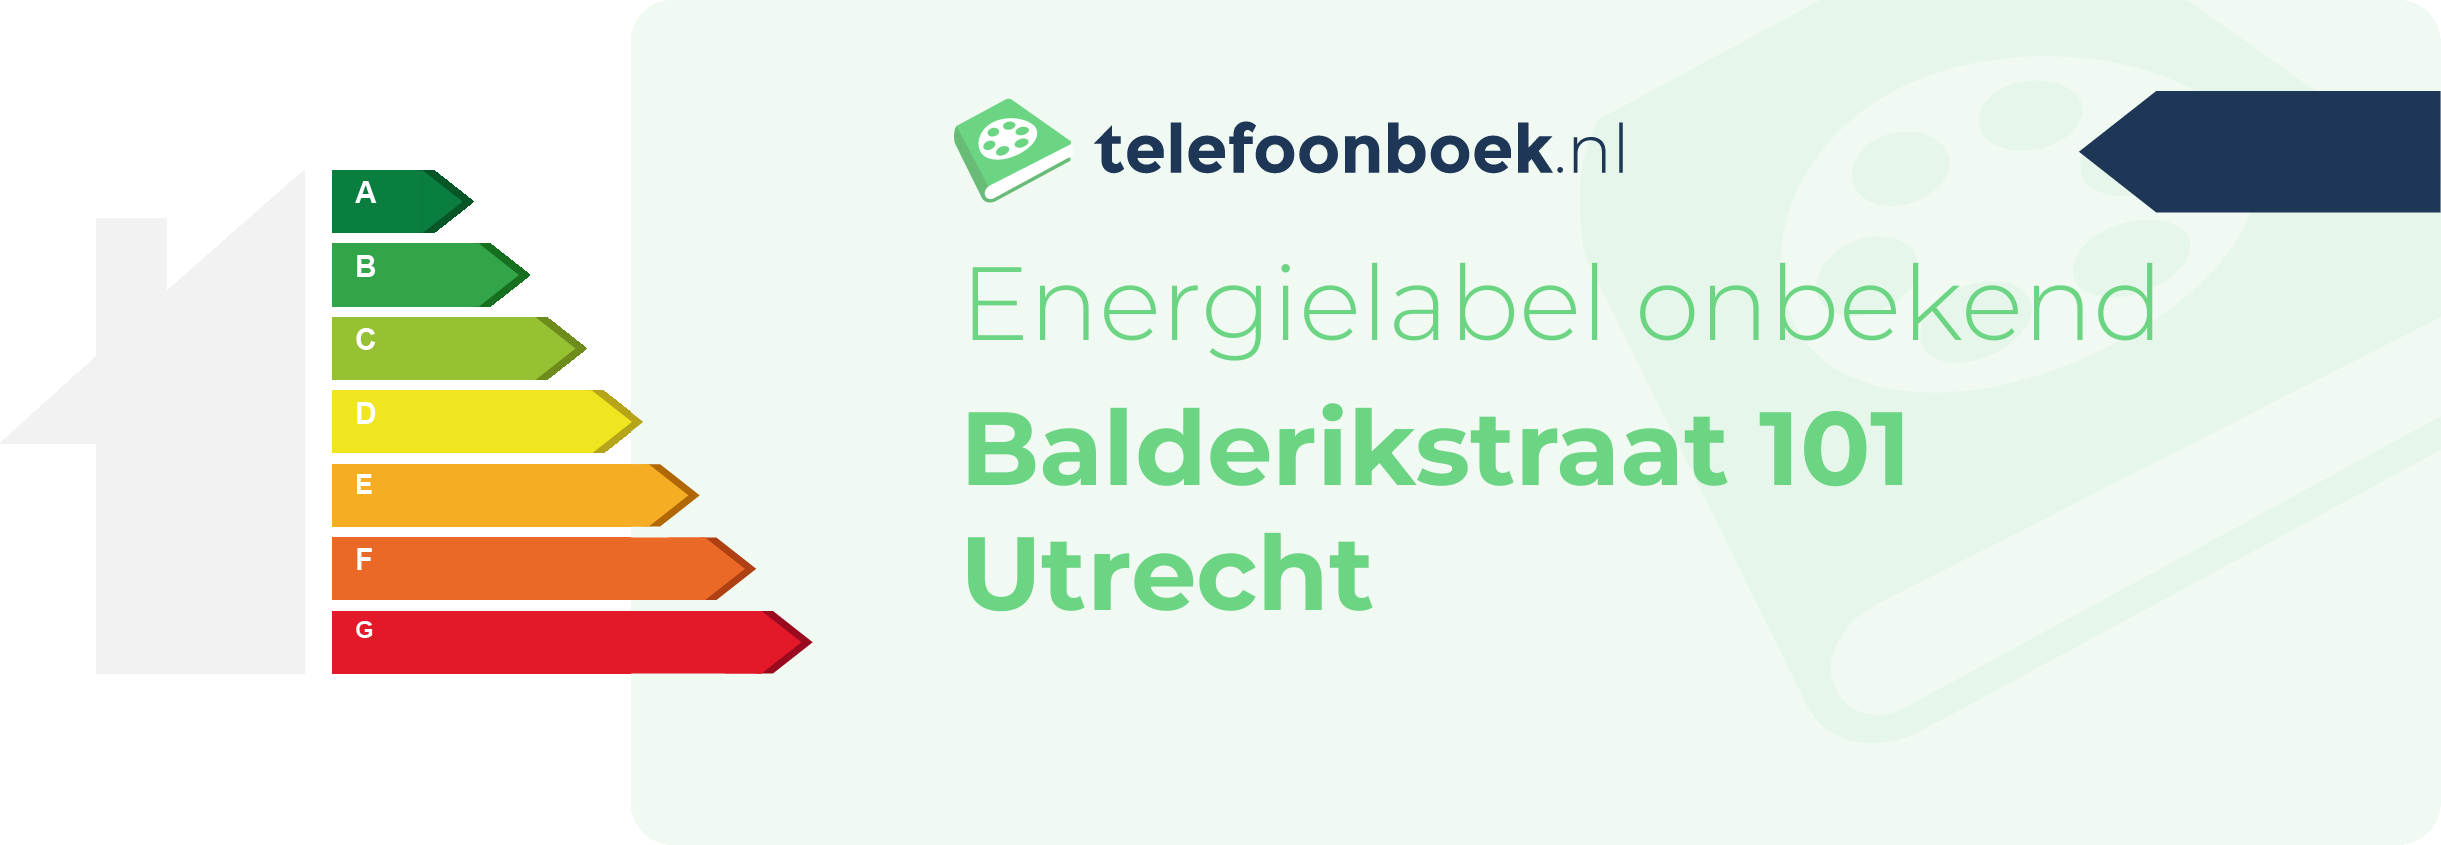 Energielabel Balderikstraat 101 Utrecht